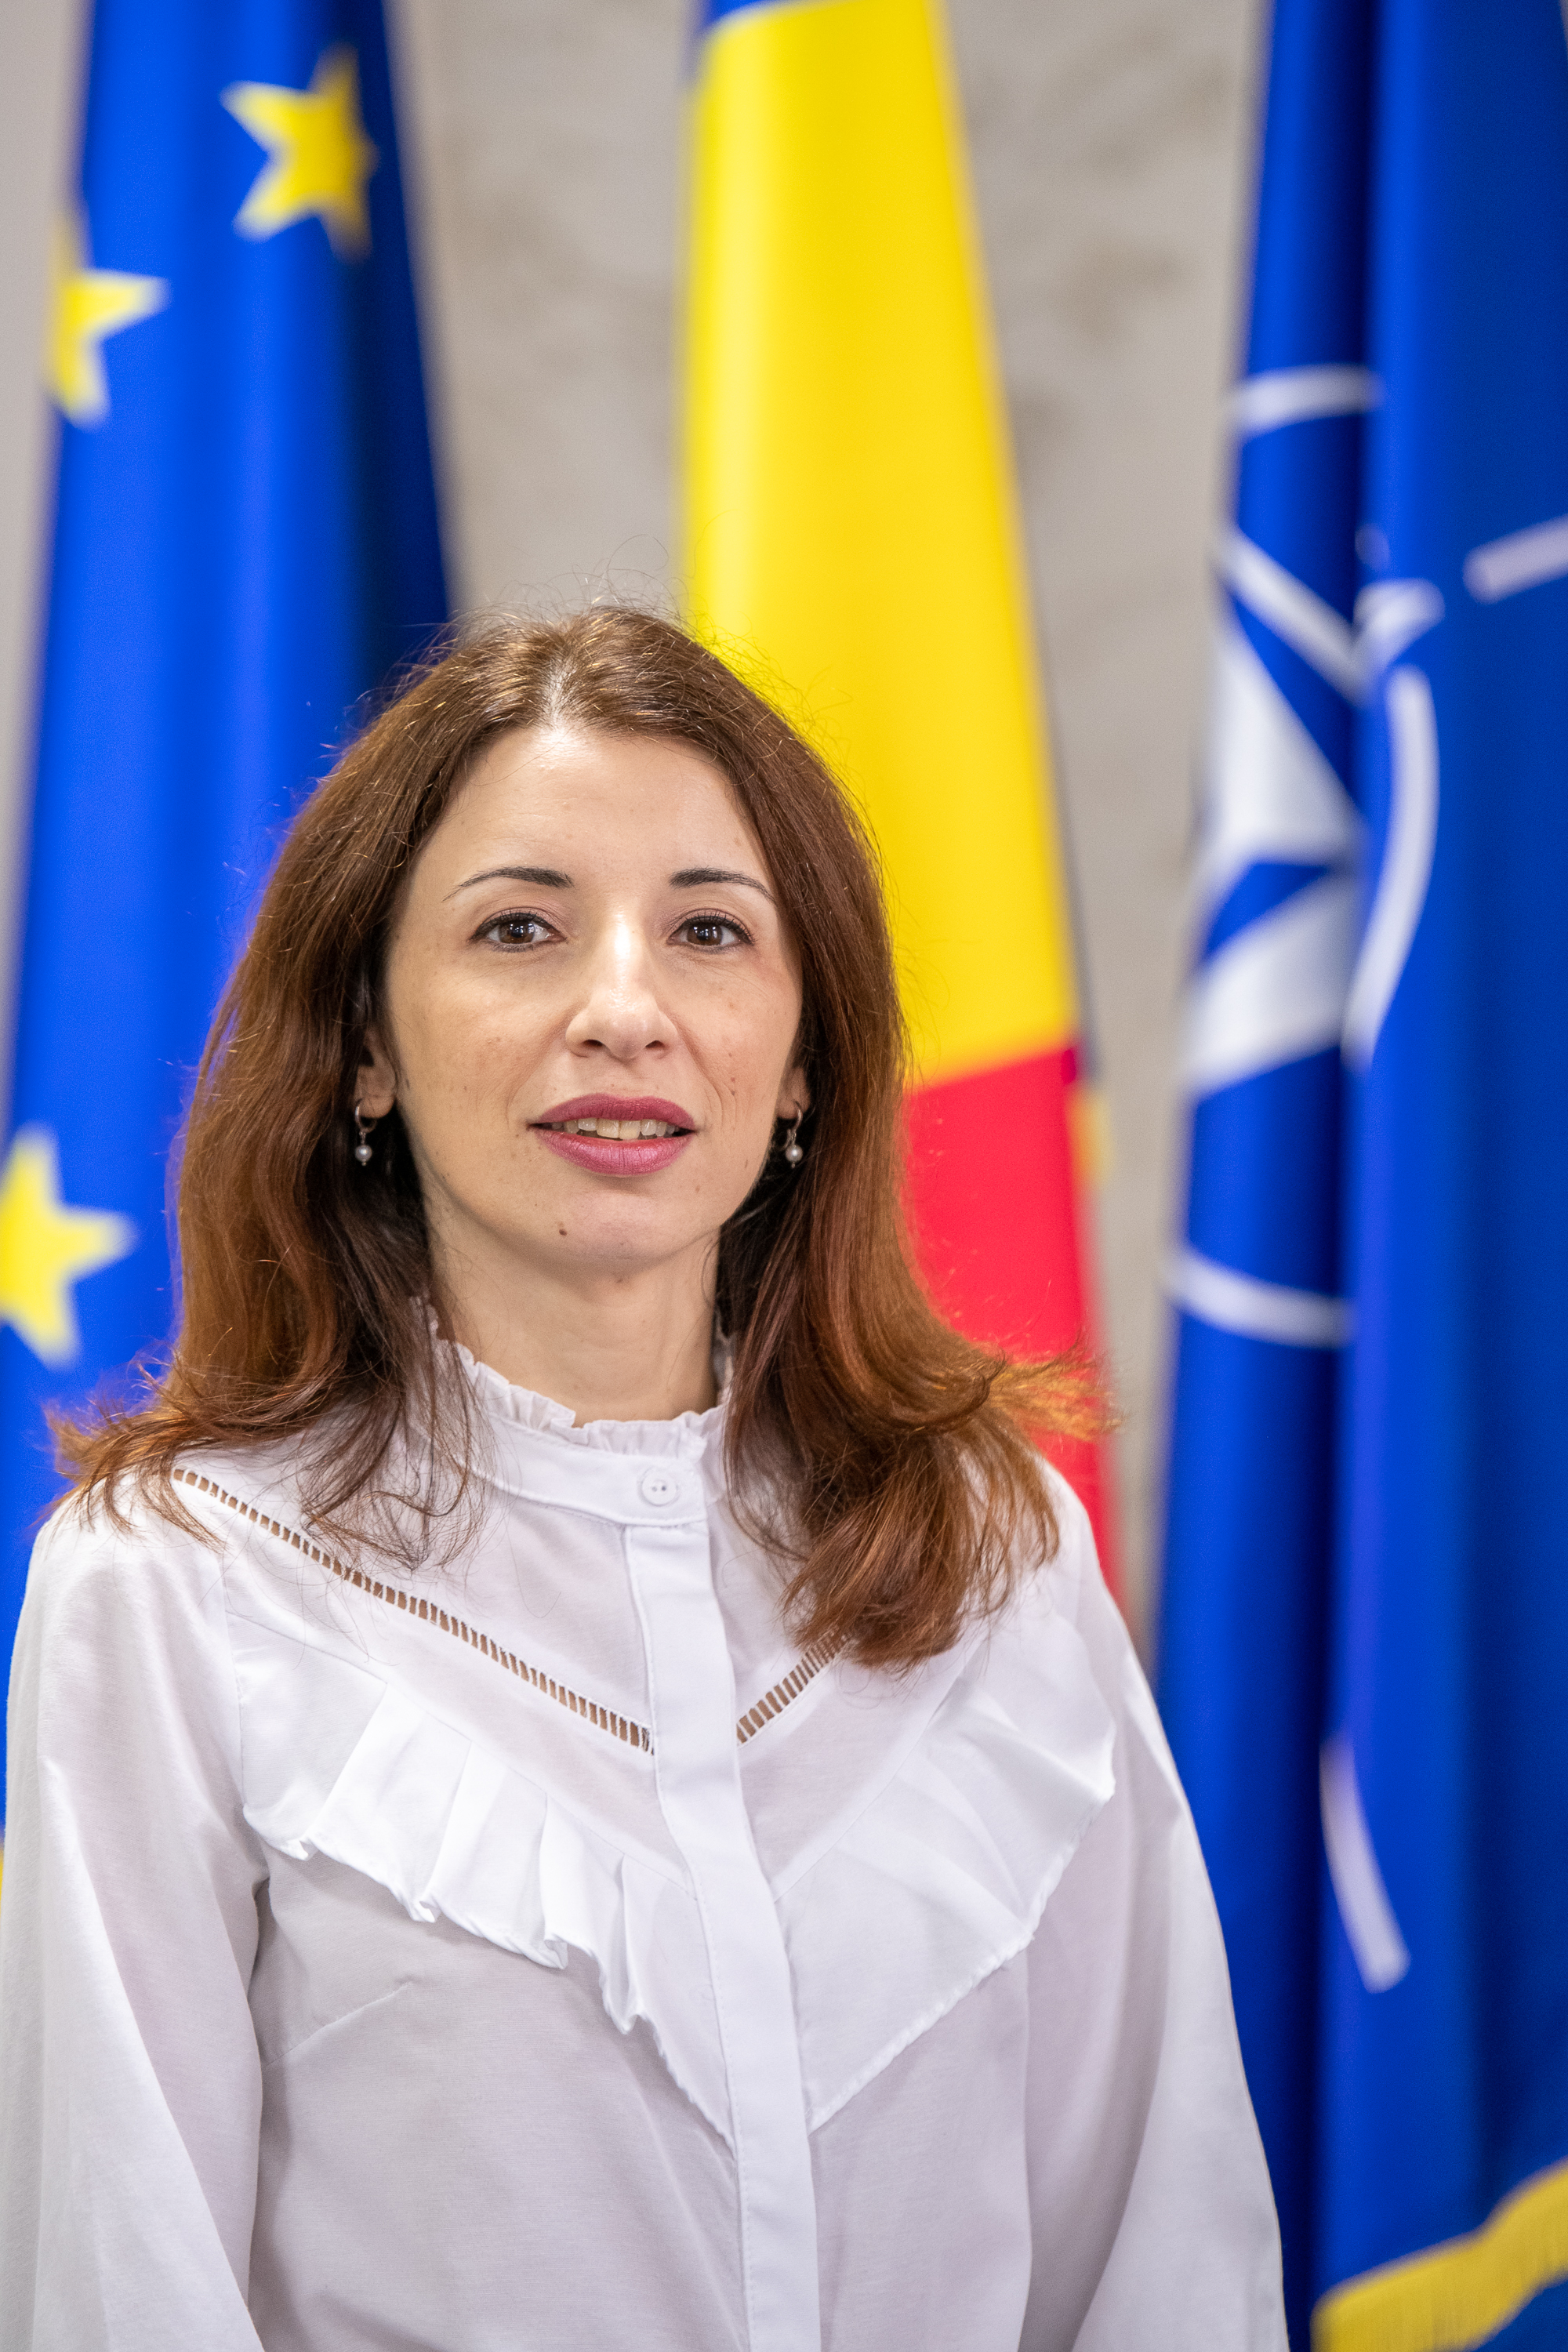 assist.prof. Alina Babos, PhD